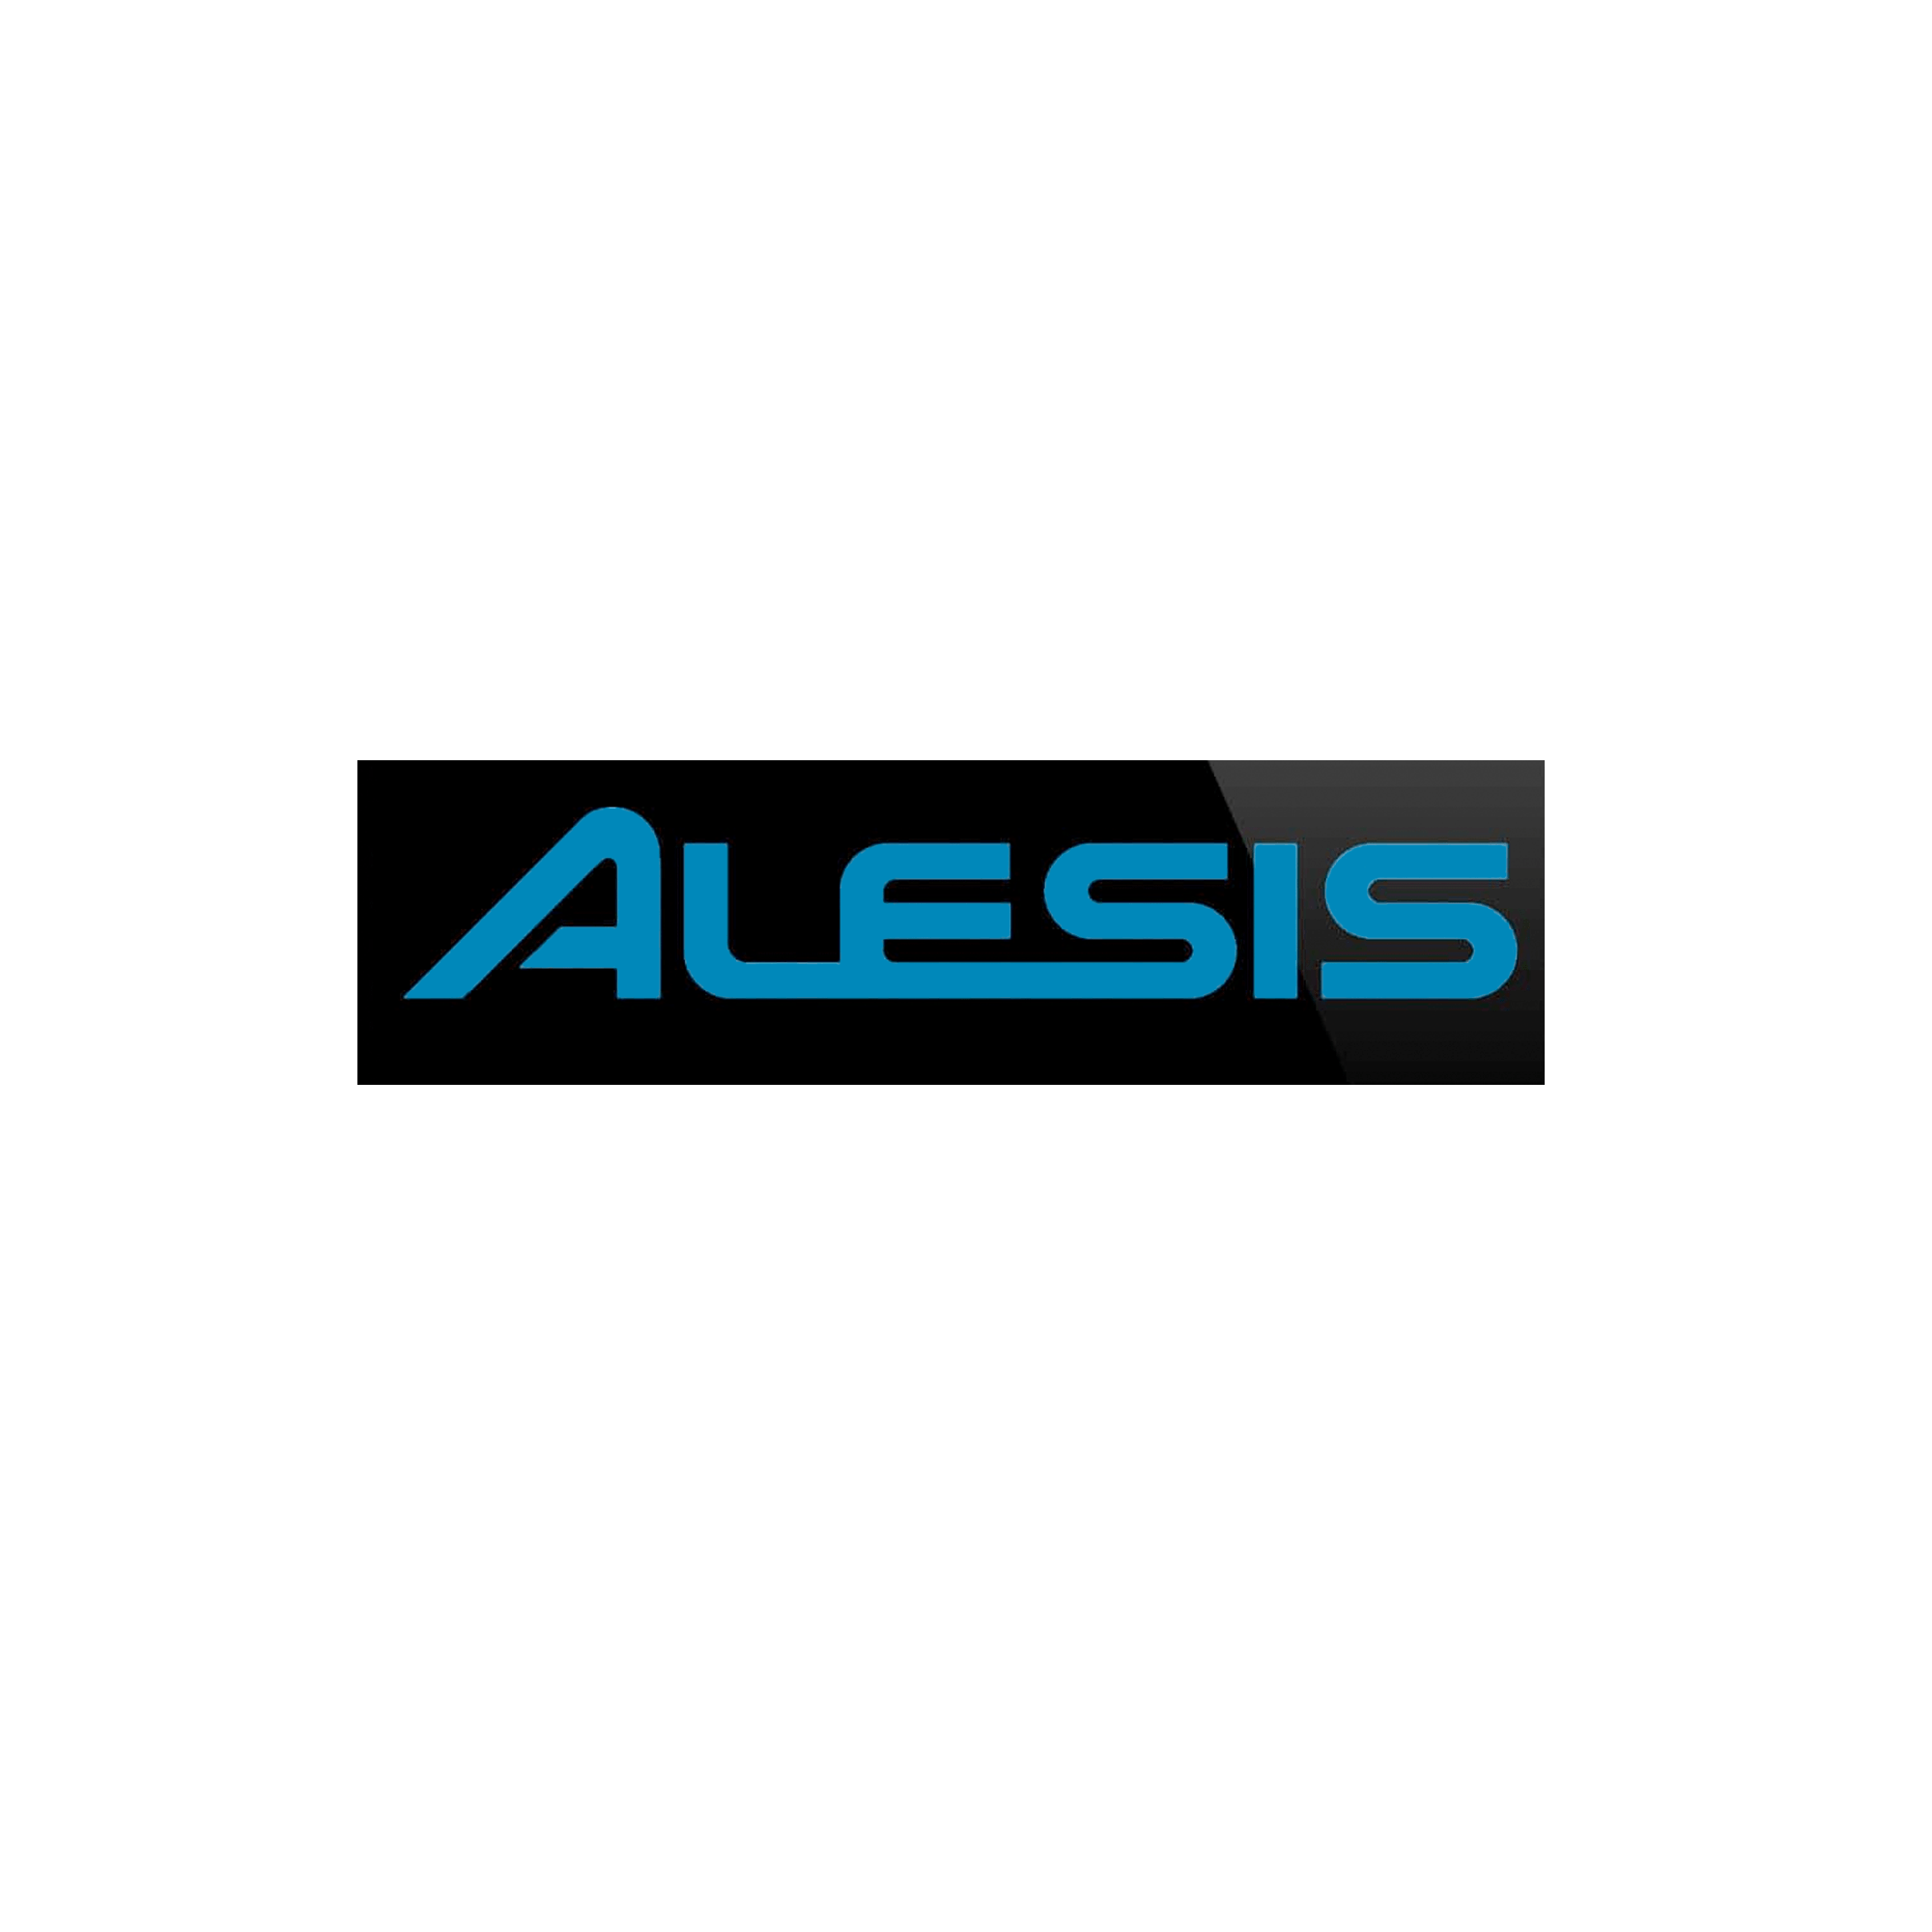 Alesis Logo - Alesis DM10 MKII Pro Kit 10 Piece Drum Kit